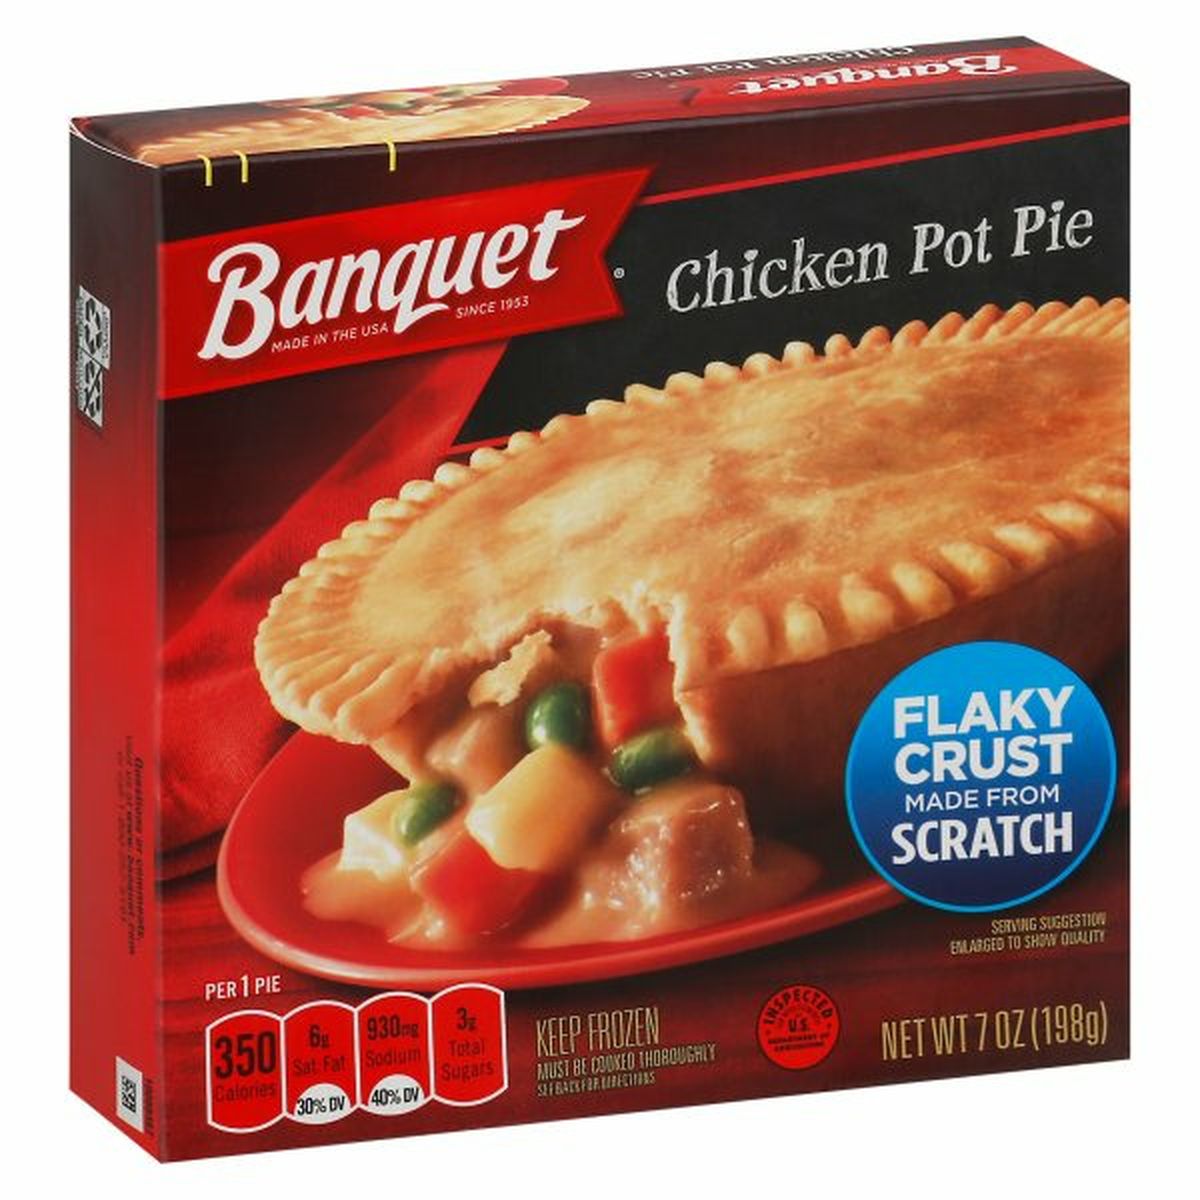 Calories in Banquet Pot Pie, Chicken